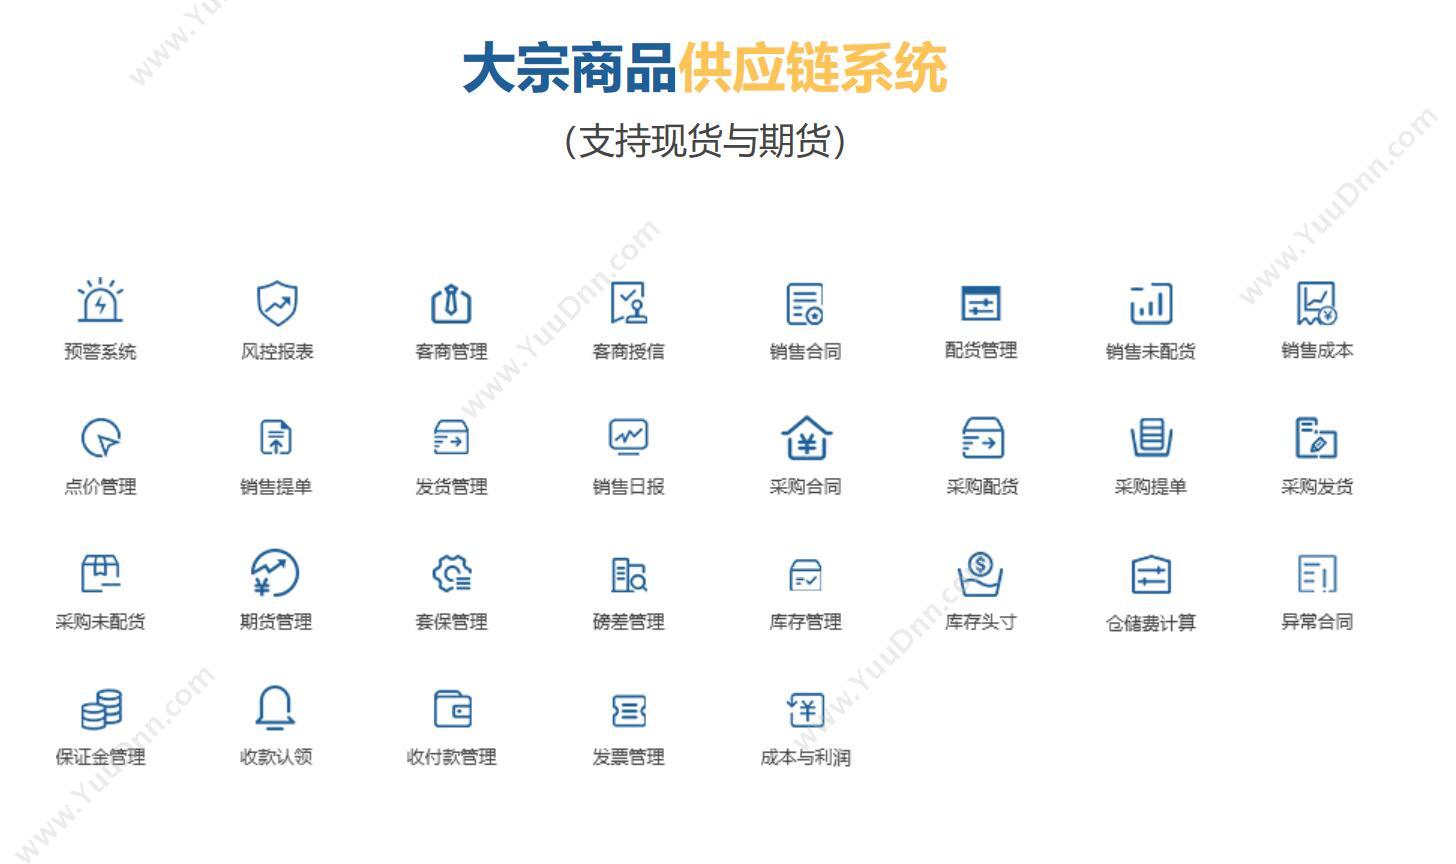 上海浦橙信息技术业有限公司 浦橙大宗商贸管理系统 企业资源计划ERP